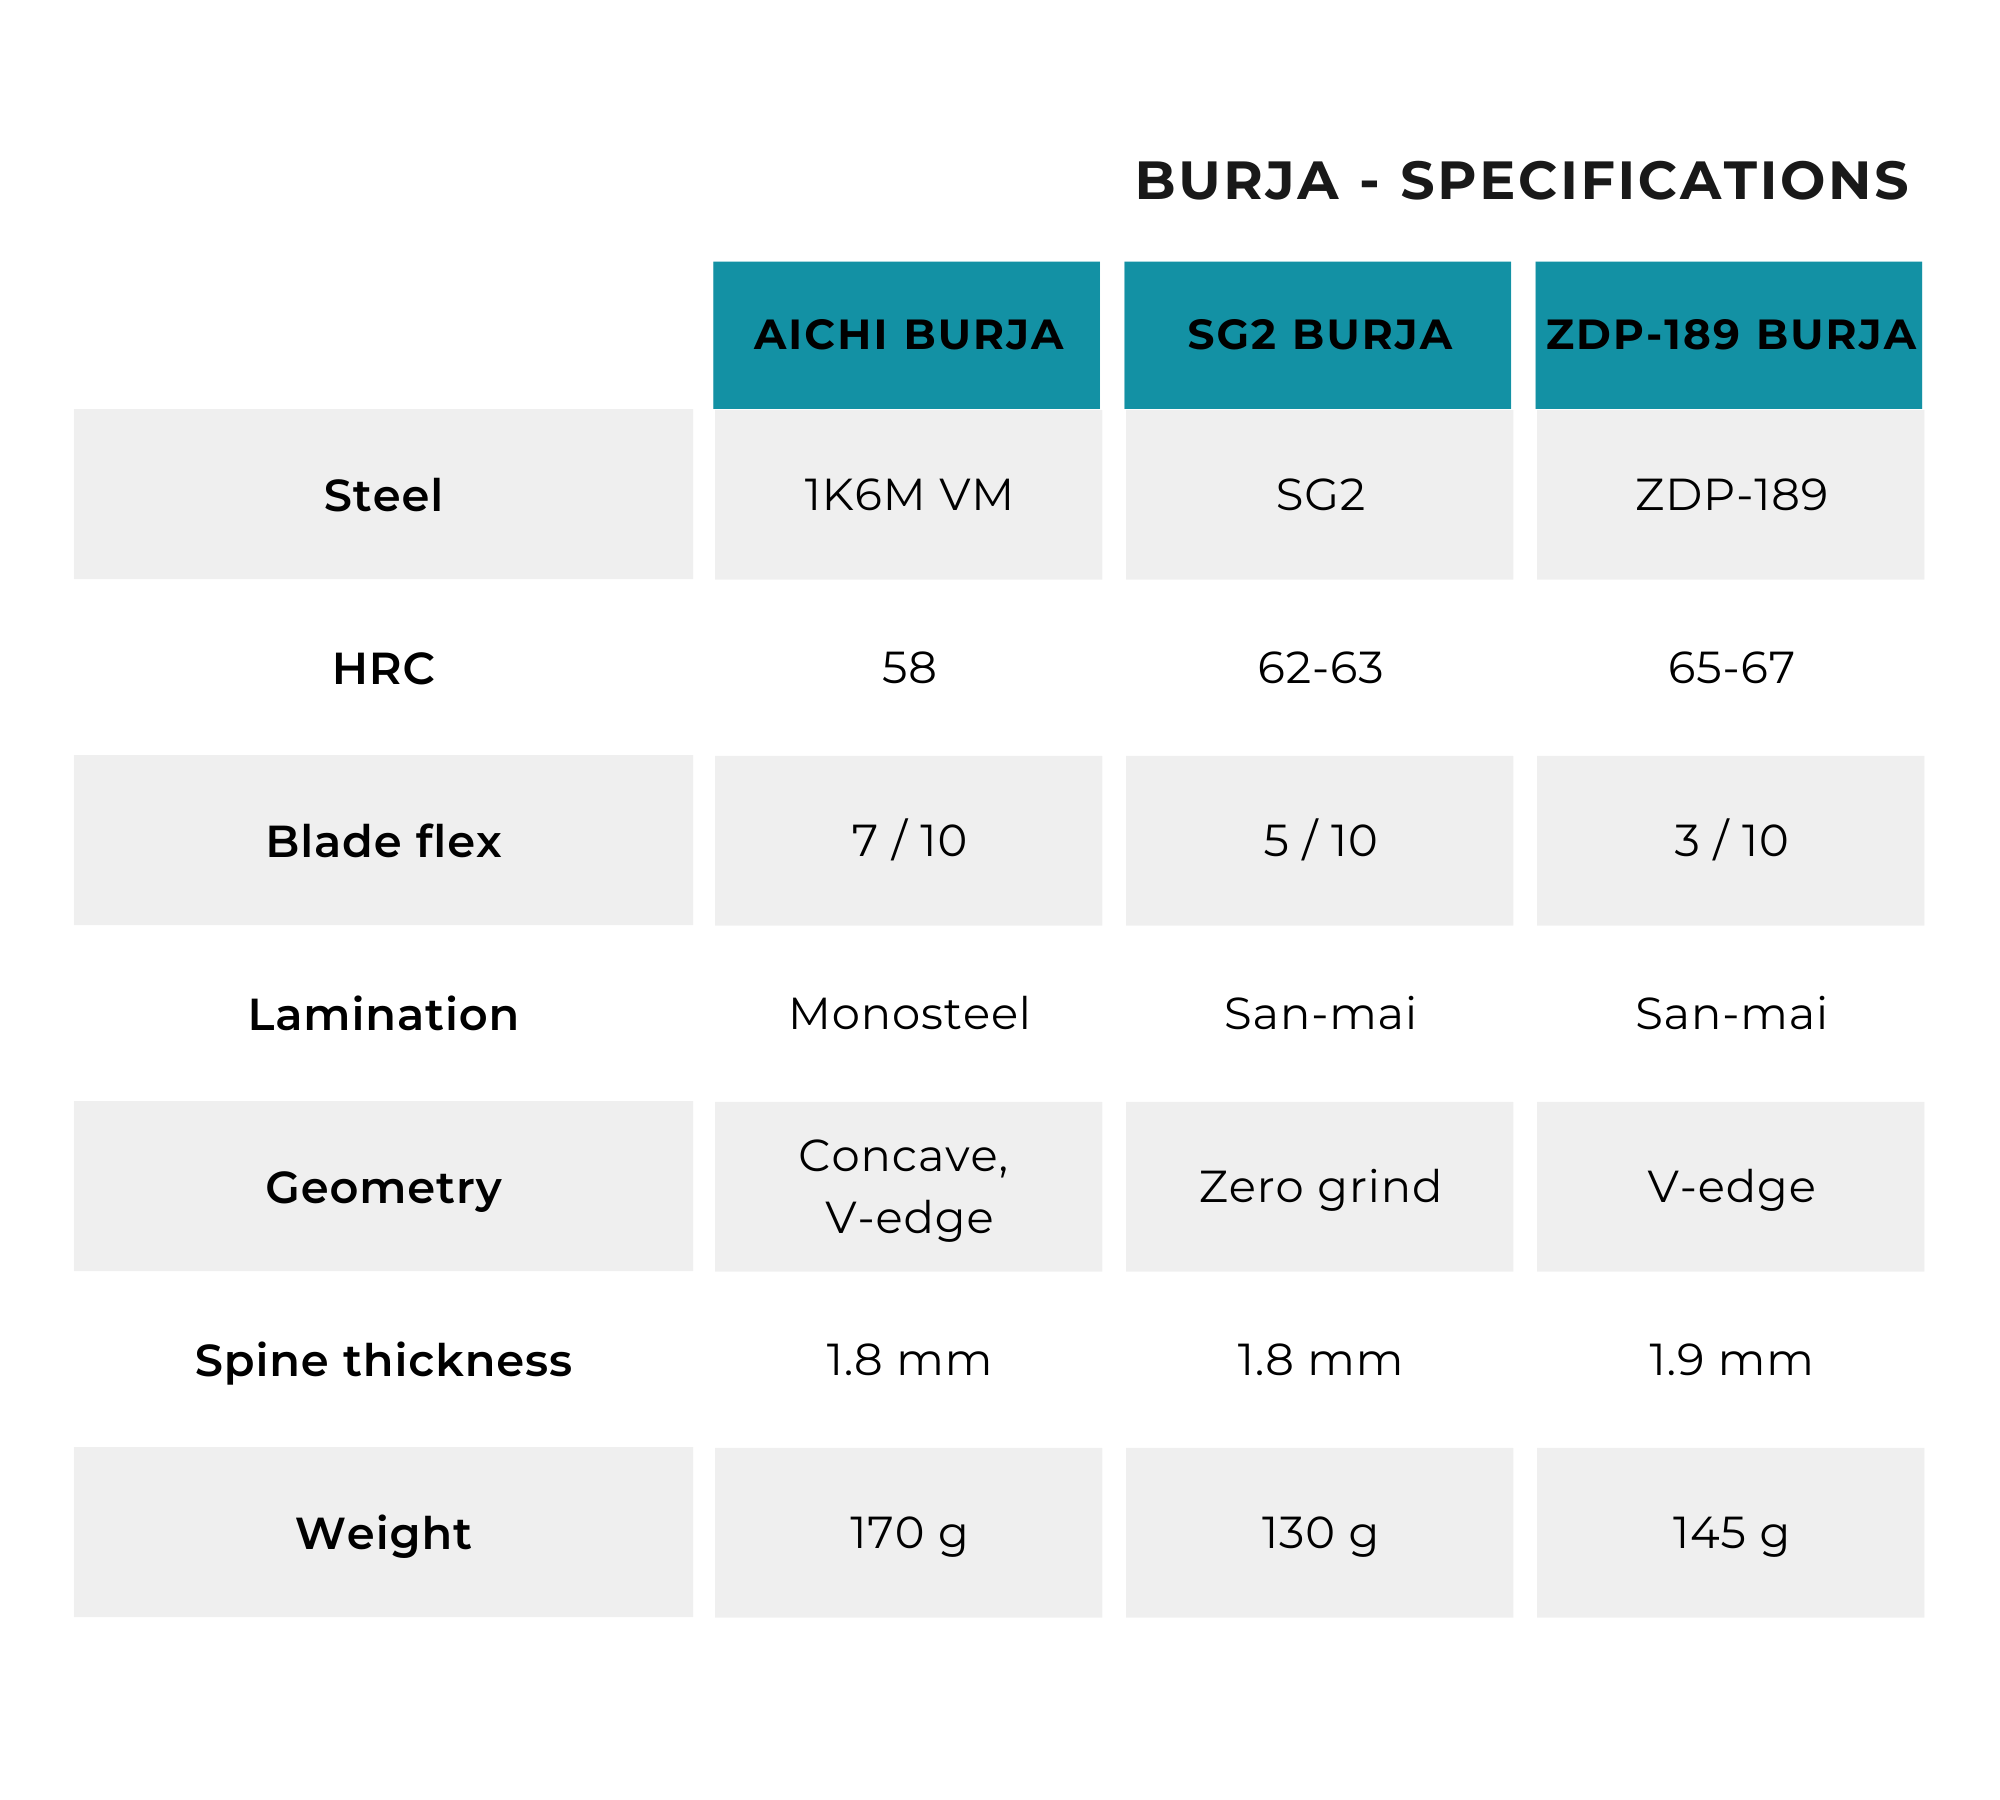 Specification comparison for Burja prosciutto / jamon knife